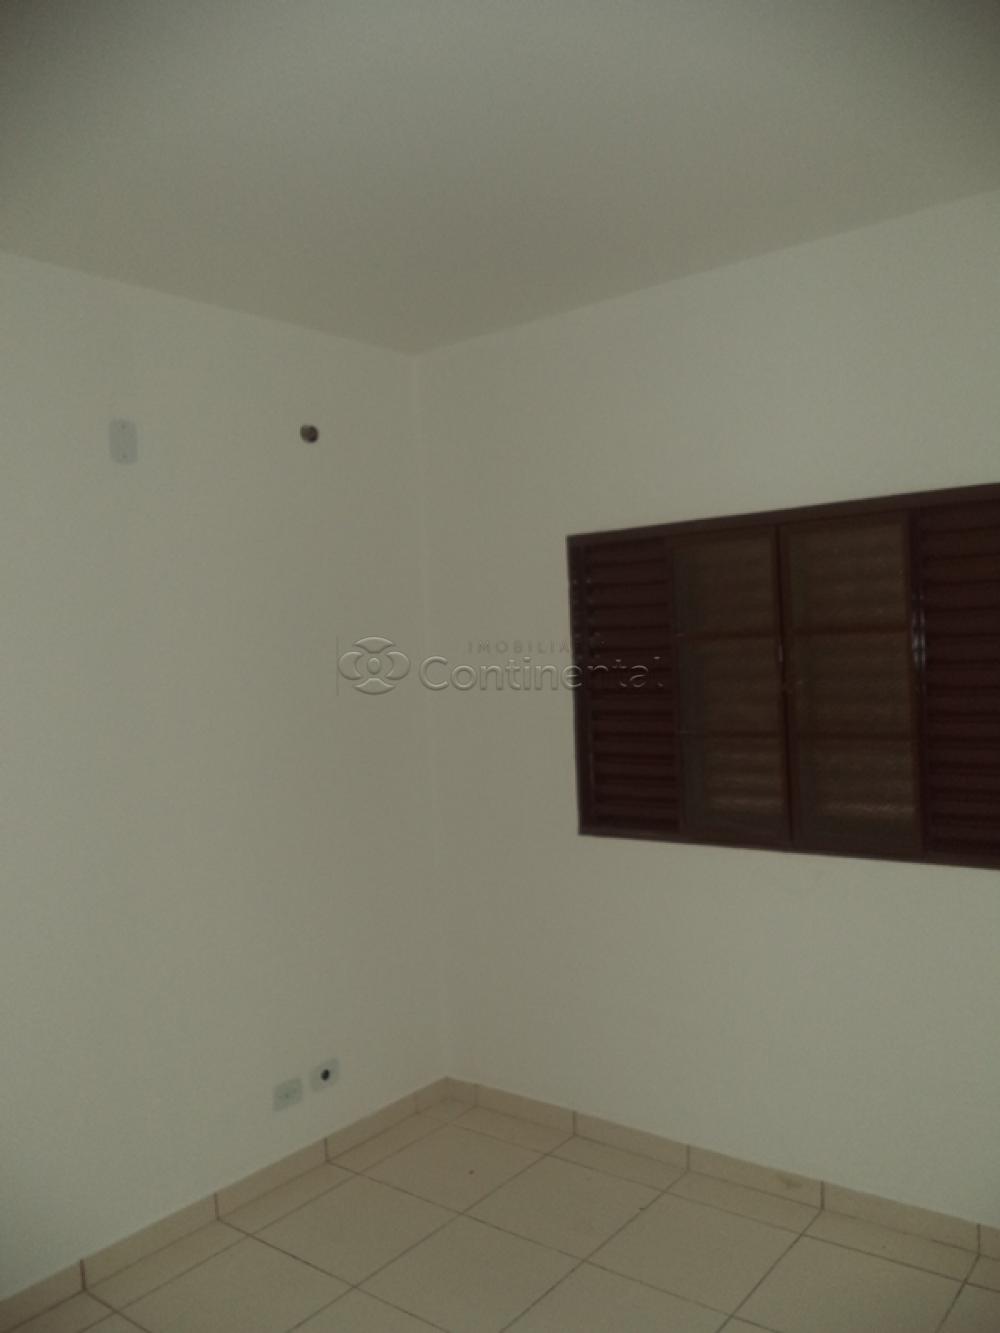 Alugar Apartamento / Padrão em Dourados R$ 534,00 - Foto 6